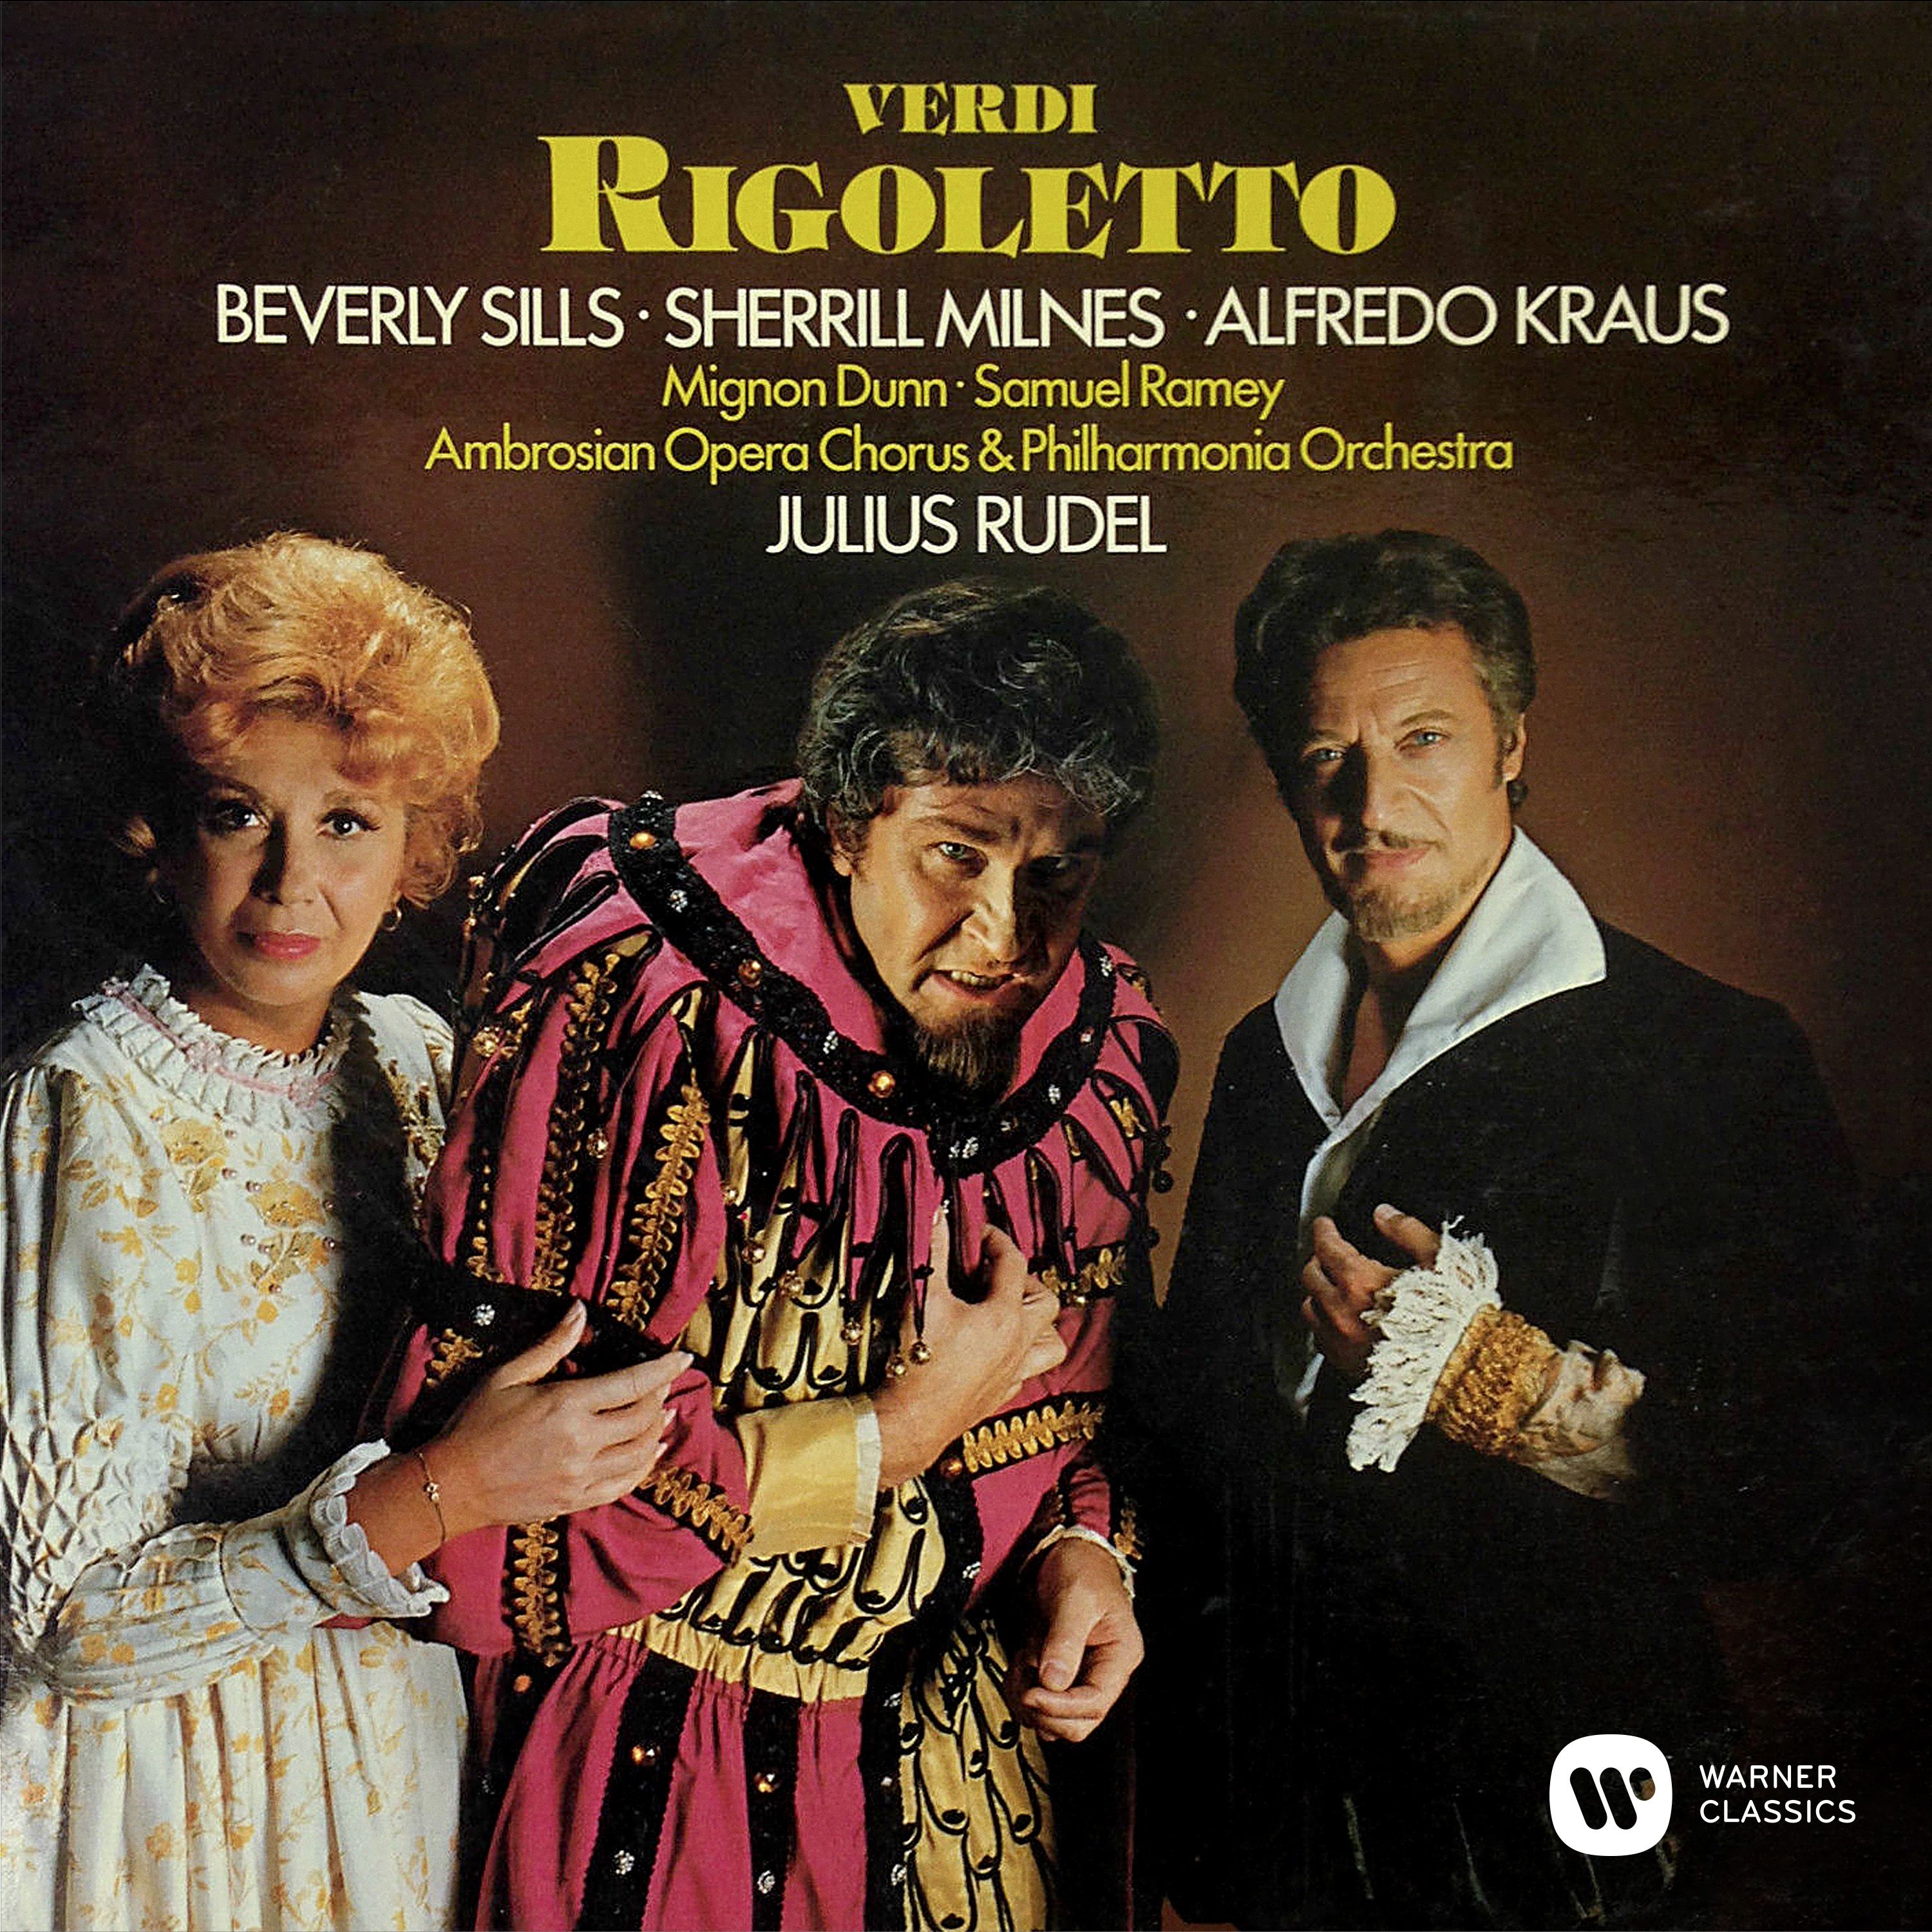 Rigoletto, Act 1: "Zitti, zitti, moviamo a vendetta" (Borsa, Marullo, Ceprano, Chorus)